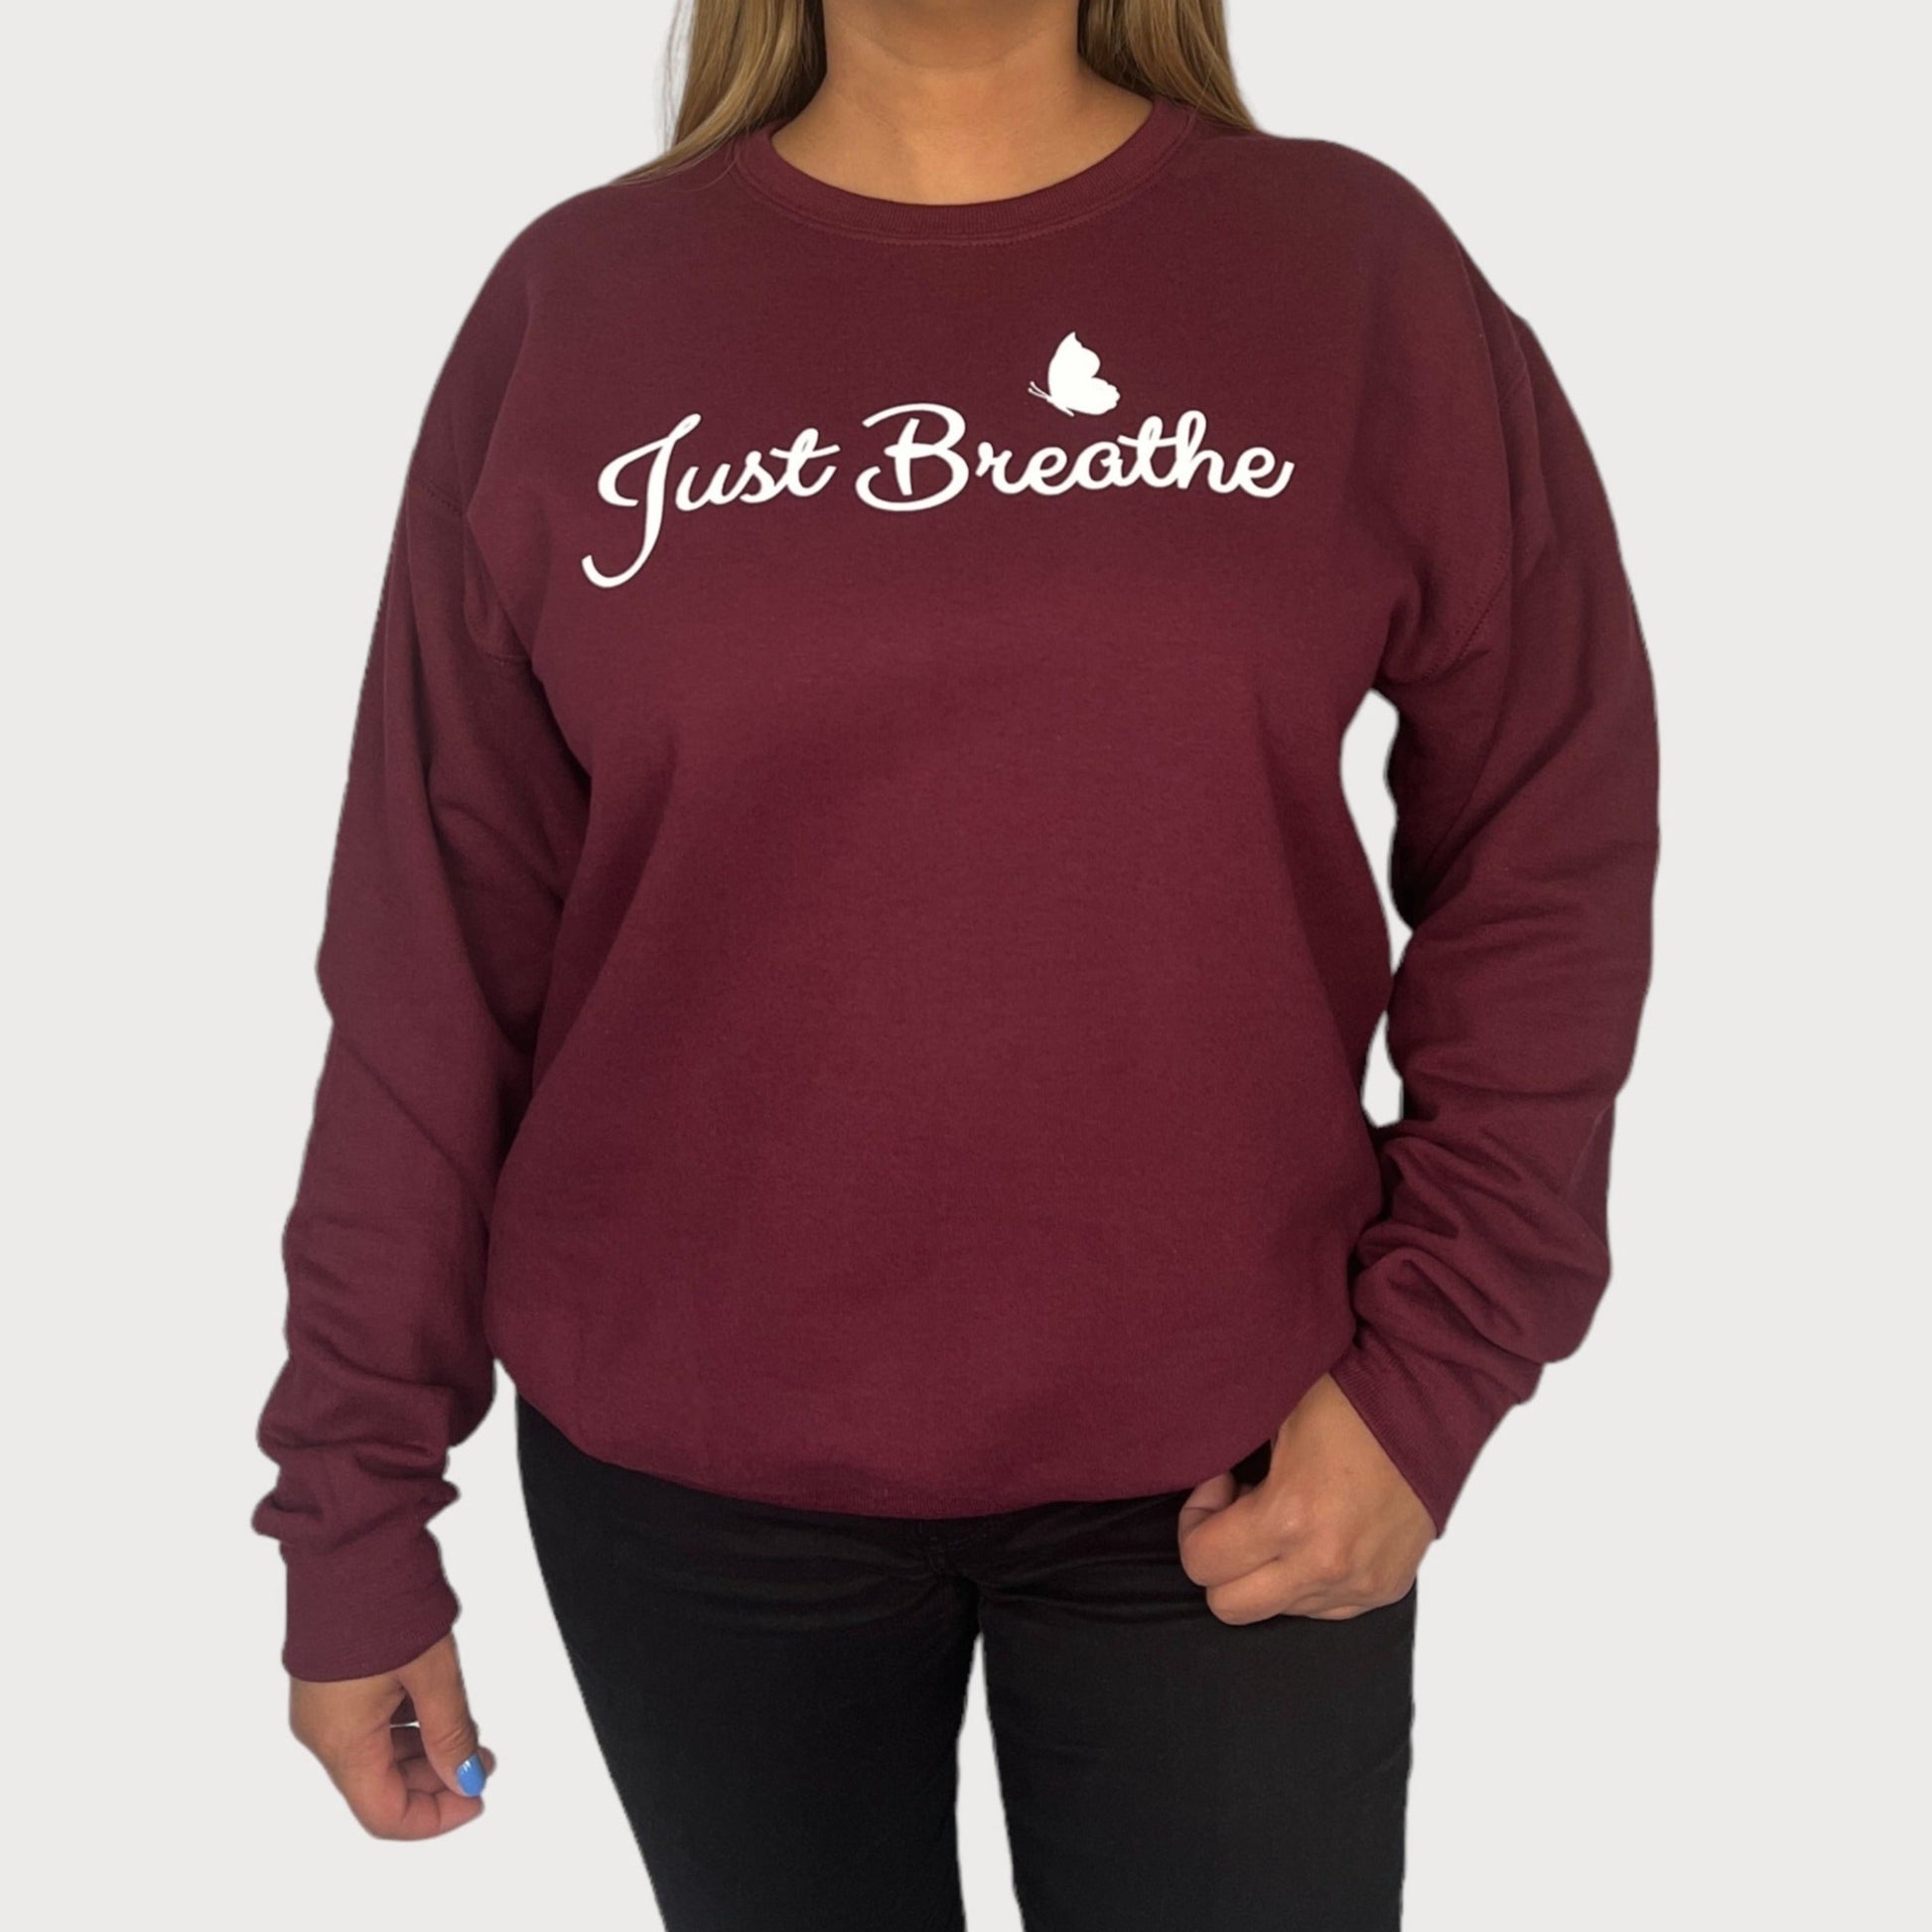 Just Breathe Crewneck Sweatshirt in Maroon color